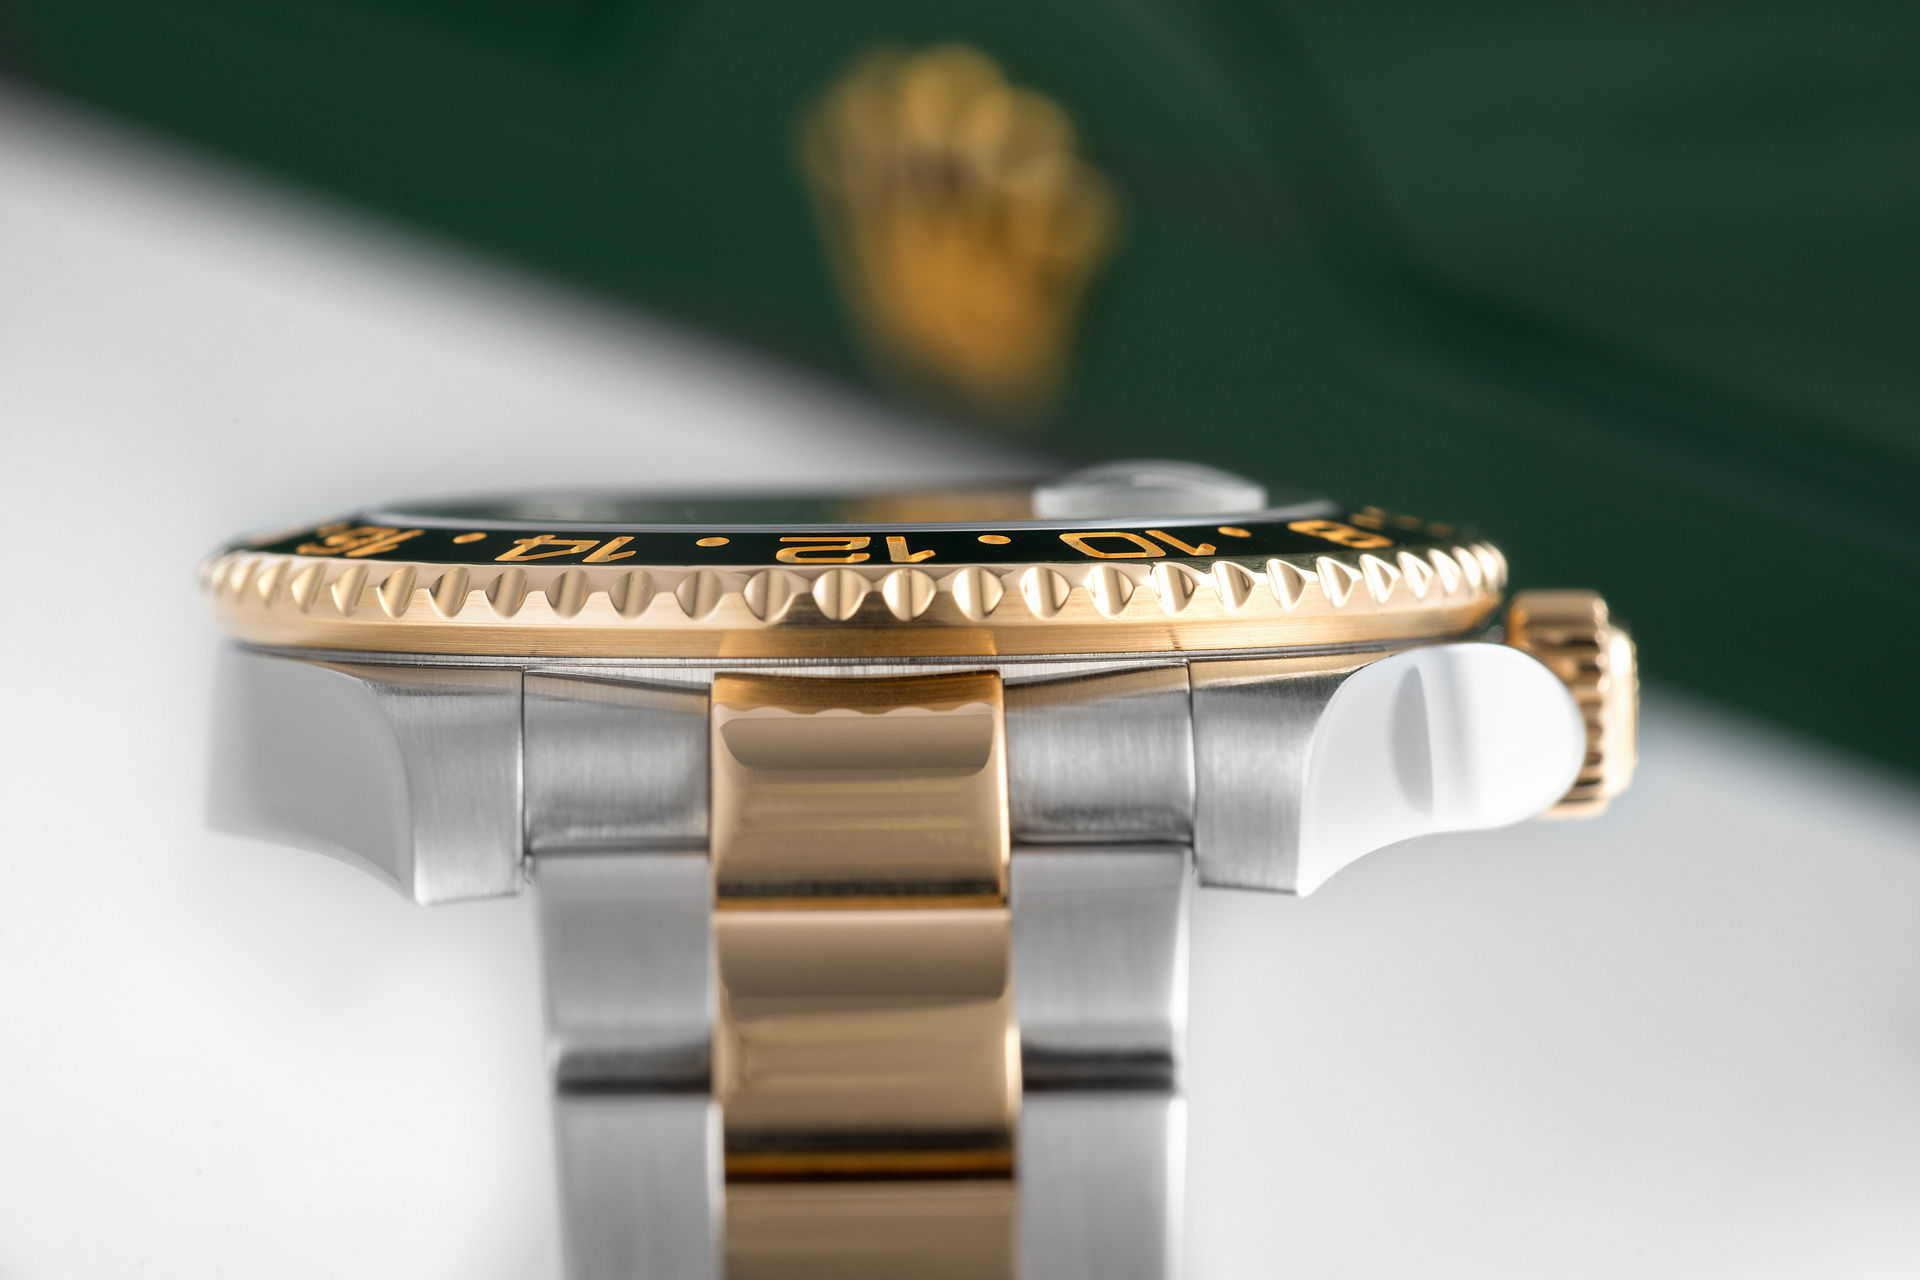 ref 116713LN | Gold & Steel 'Cerachrom' | Rolex GMT-Master II